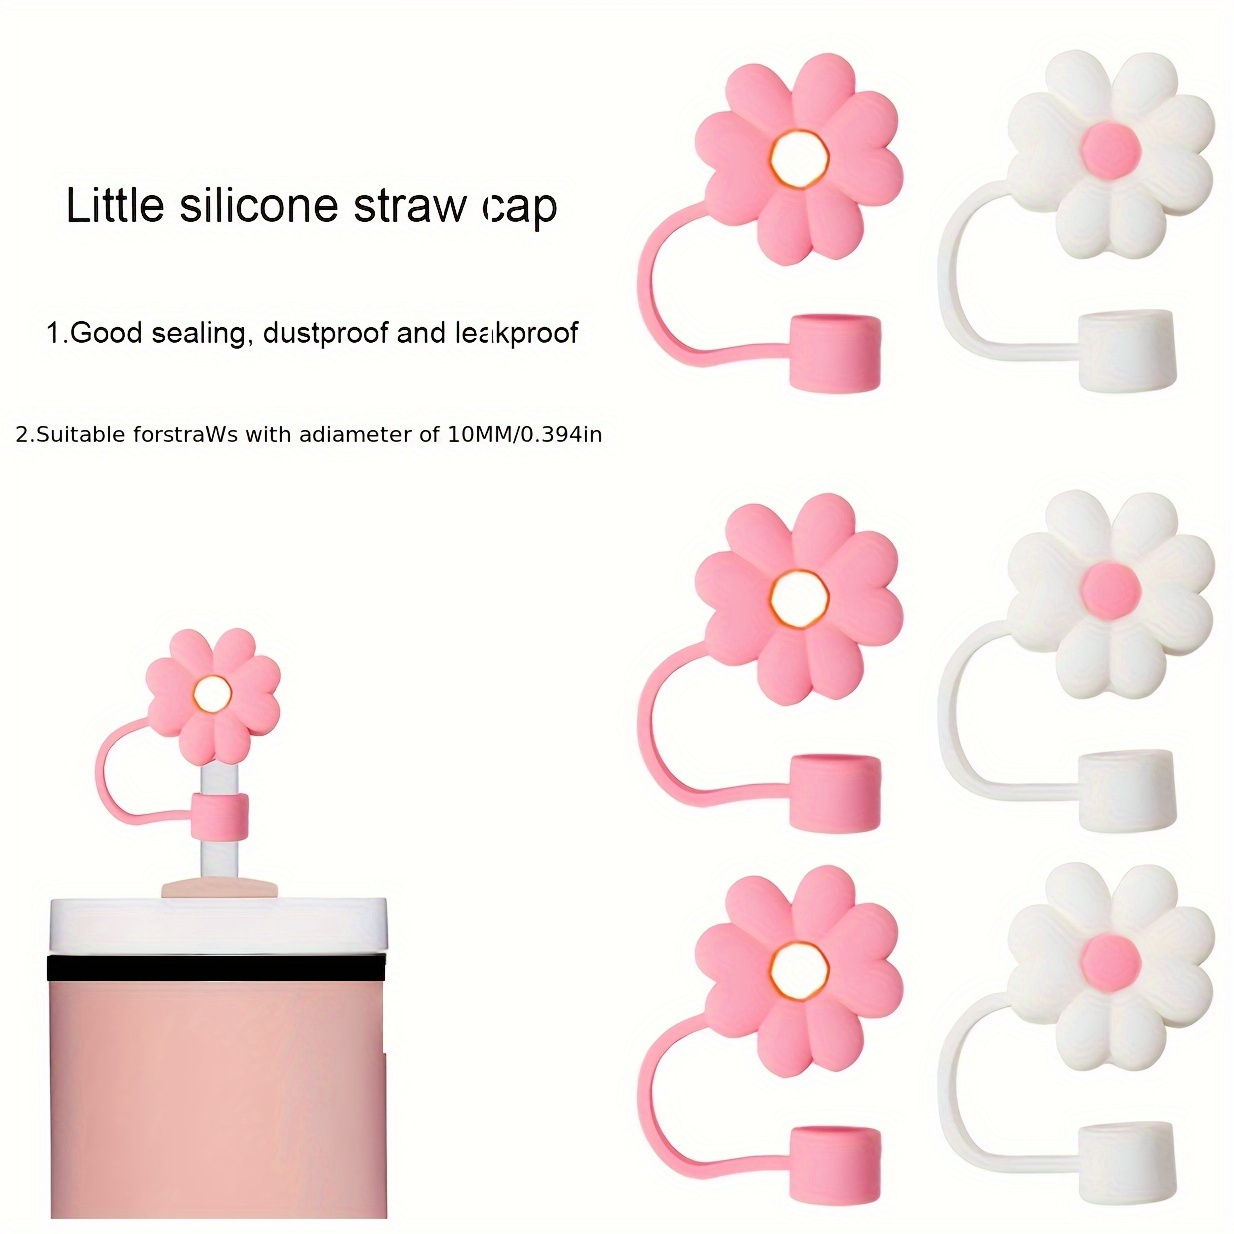 Reusable Cute Flower Straw Covers Dustproof Splash Proof - Temu